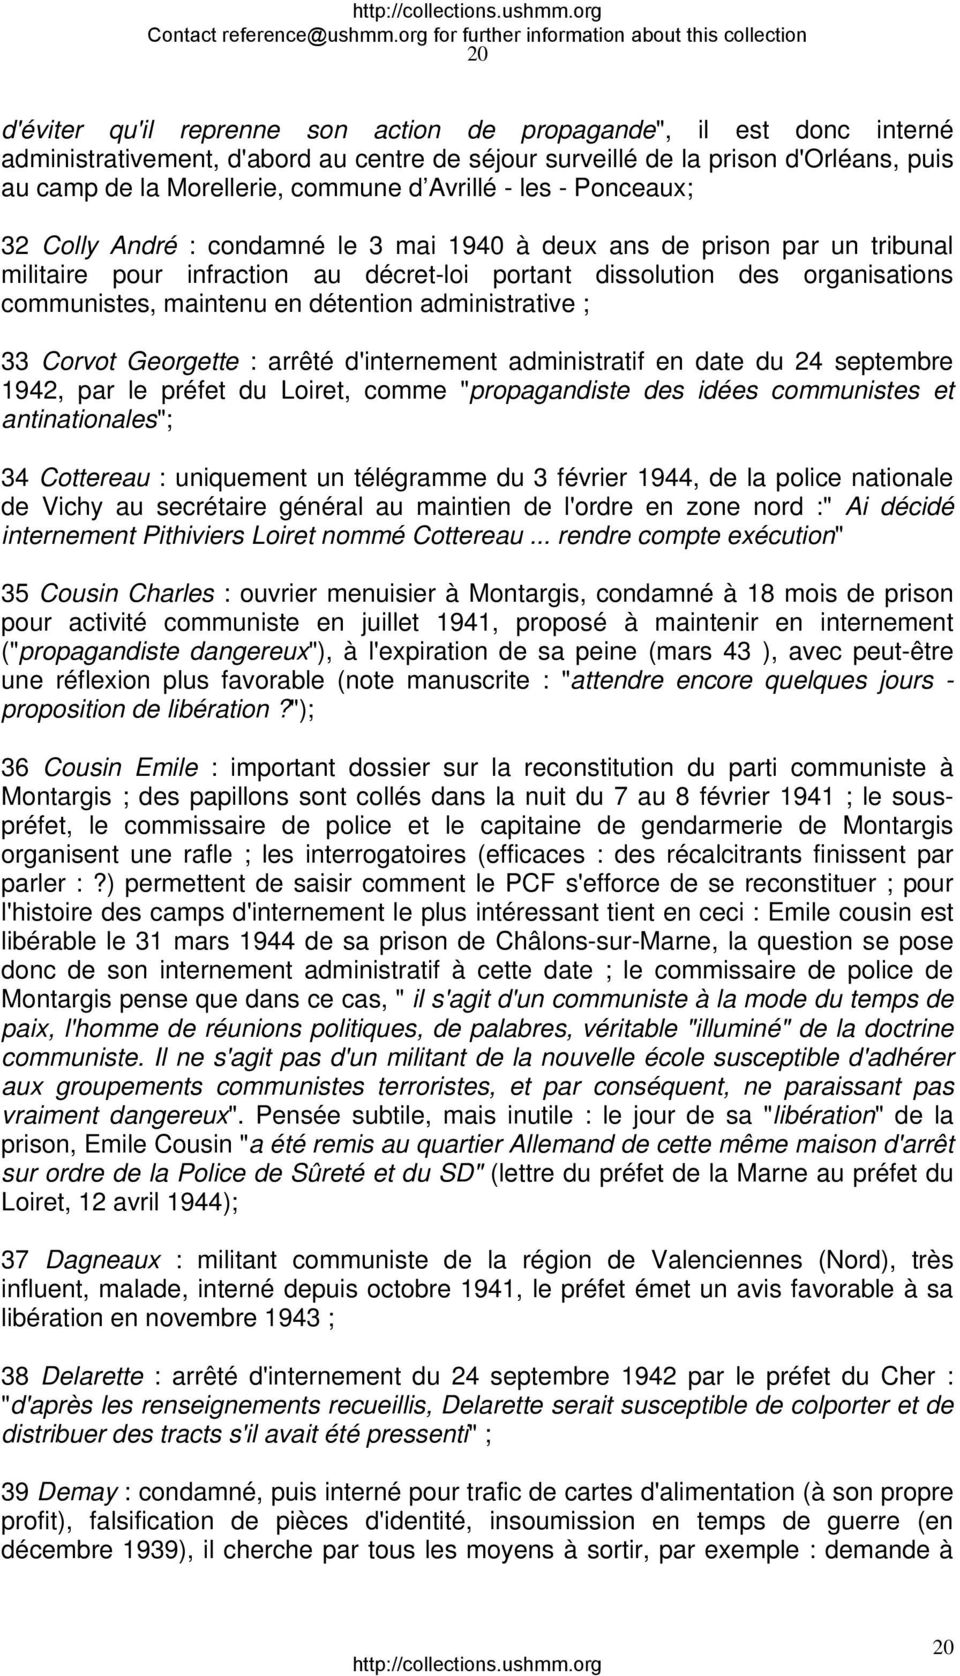 maintenu en détention administrative ; 33 Corvot Georgette : arrêté d'internement administratif en date du 24 septembre 1942, par le préfet du Loiret, comme "propagandiste des idées communistes et